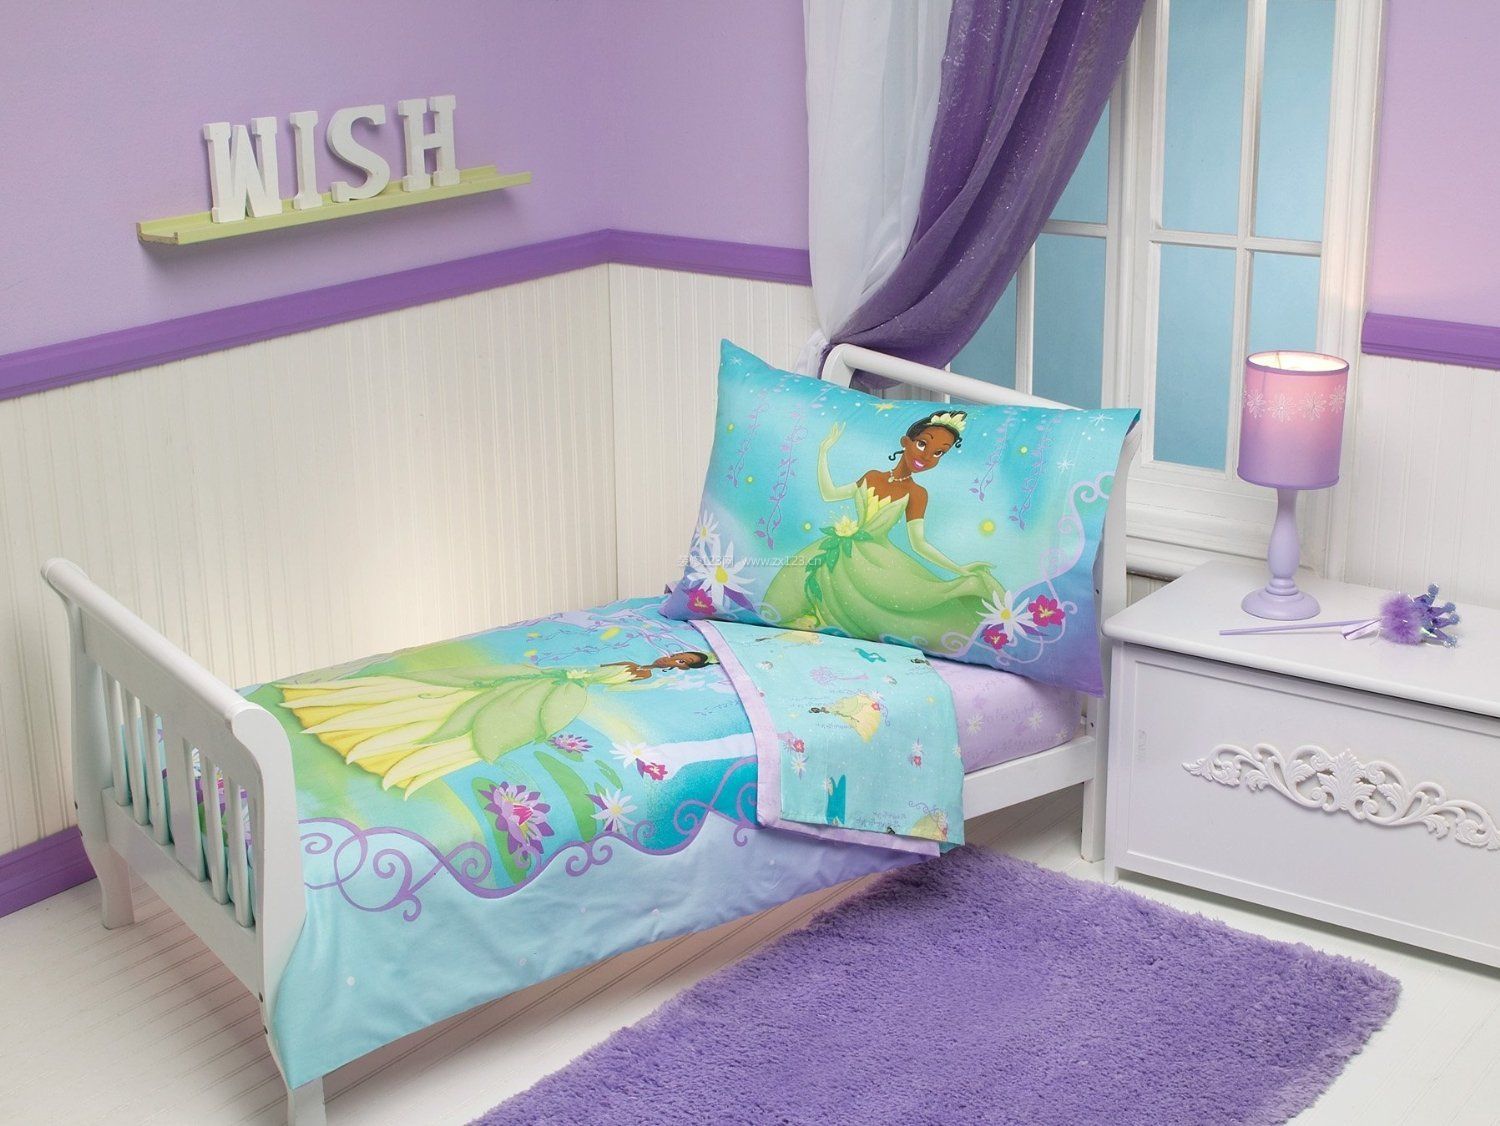 12岁儿童房间紫色装修效果图